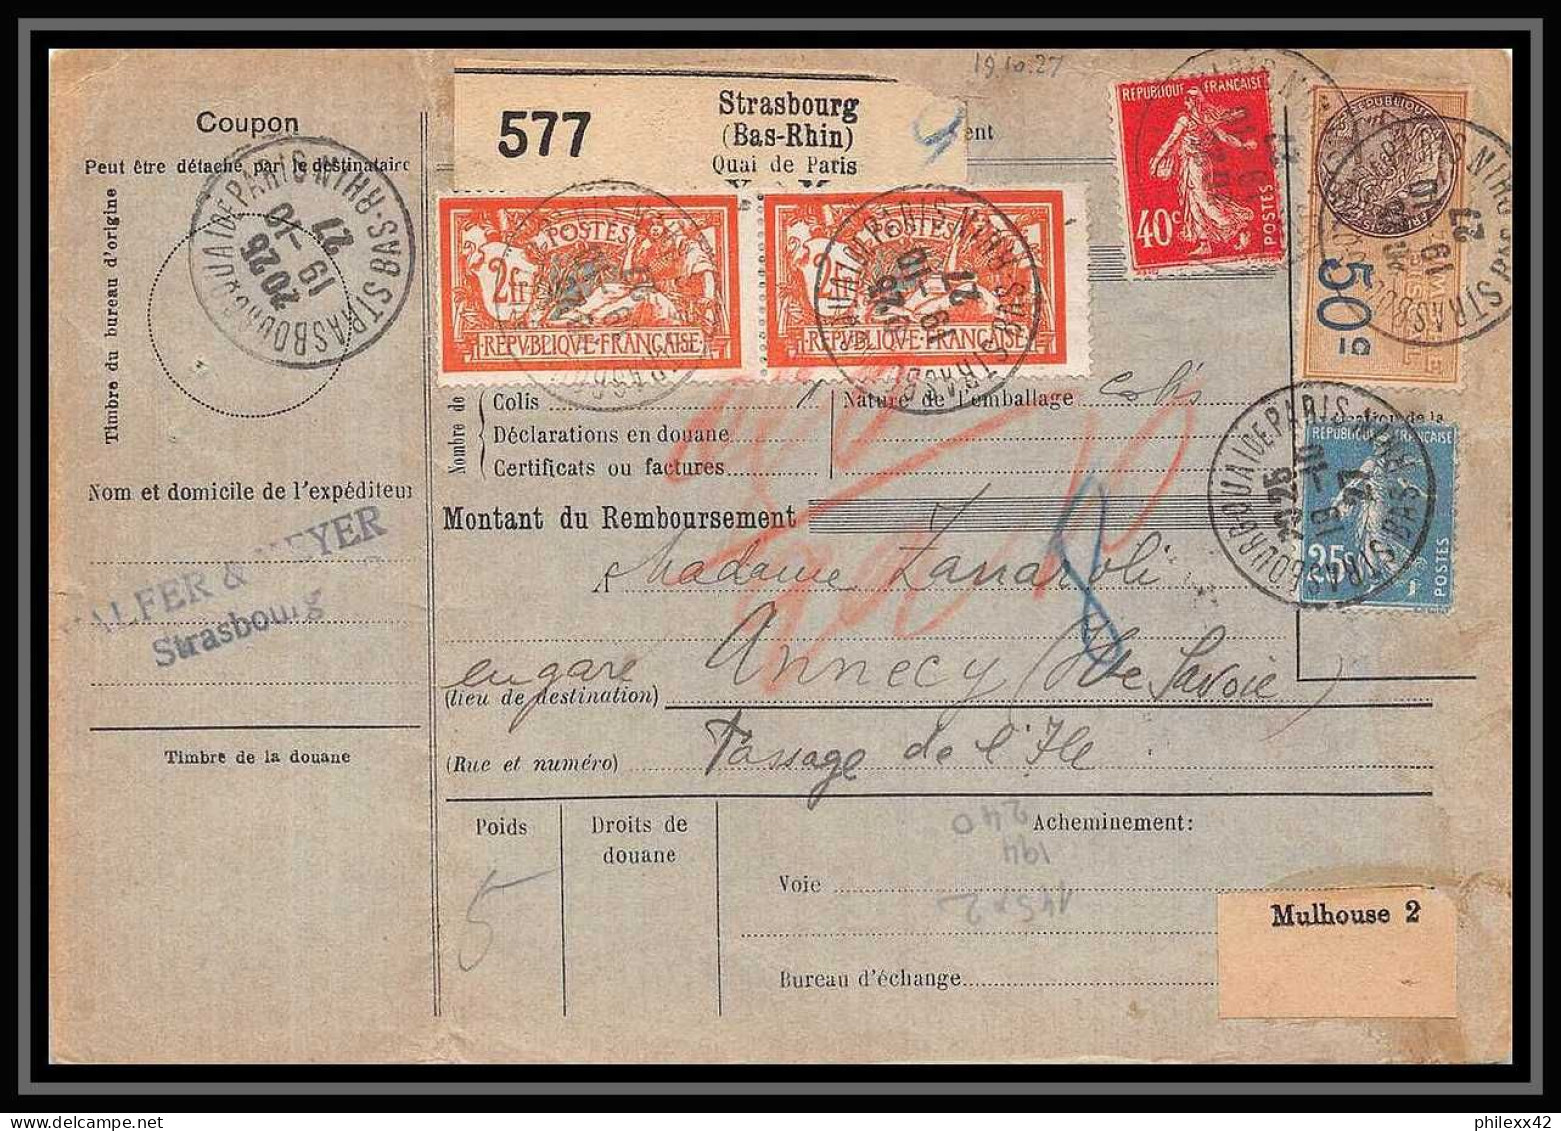 25235/ Bulletin D'expédition France Colis Postaux Fiscal Bas-Rhin Strasbourg Pour Annecy 1927 Haute Savoie Merson N°145 - Covers & Documents